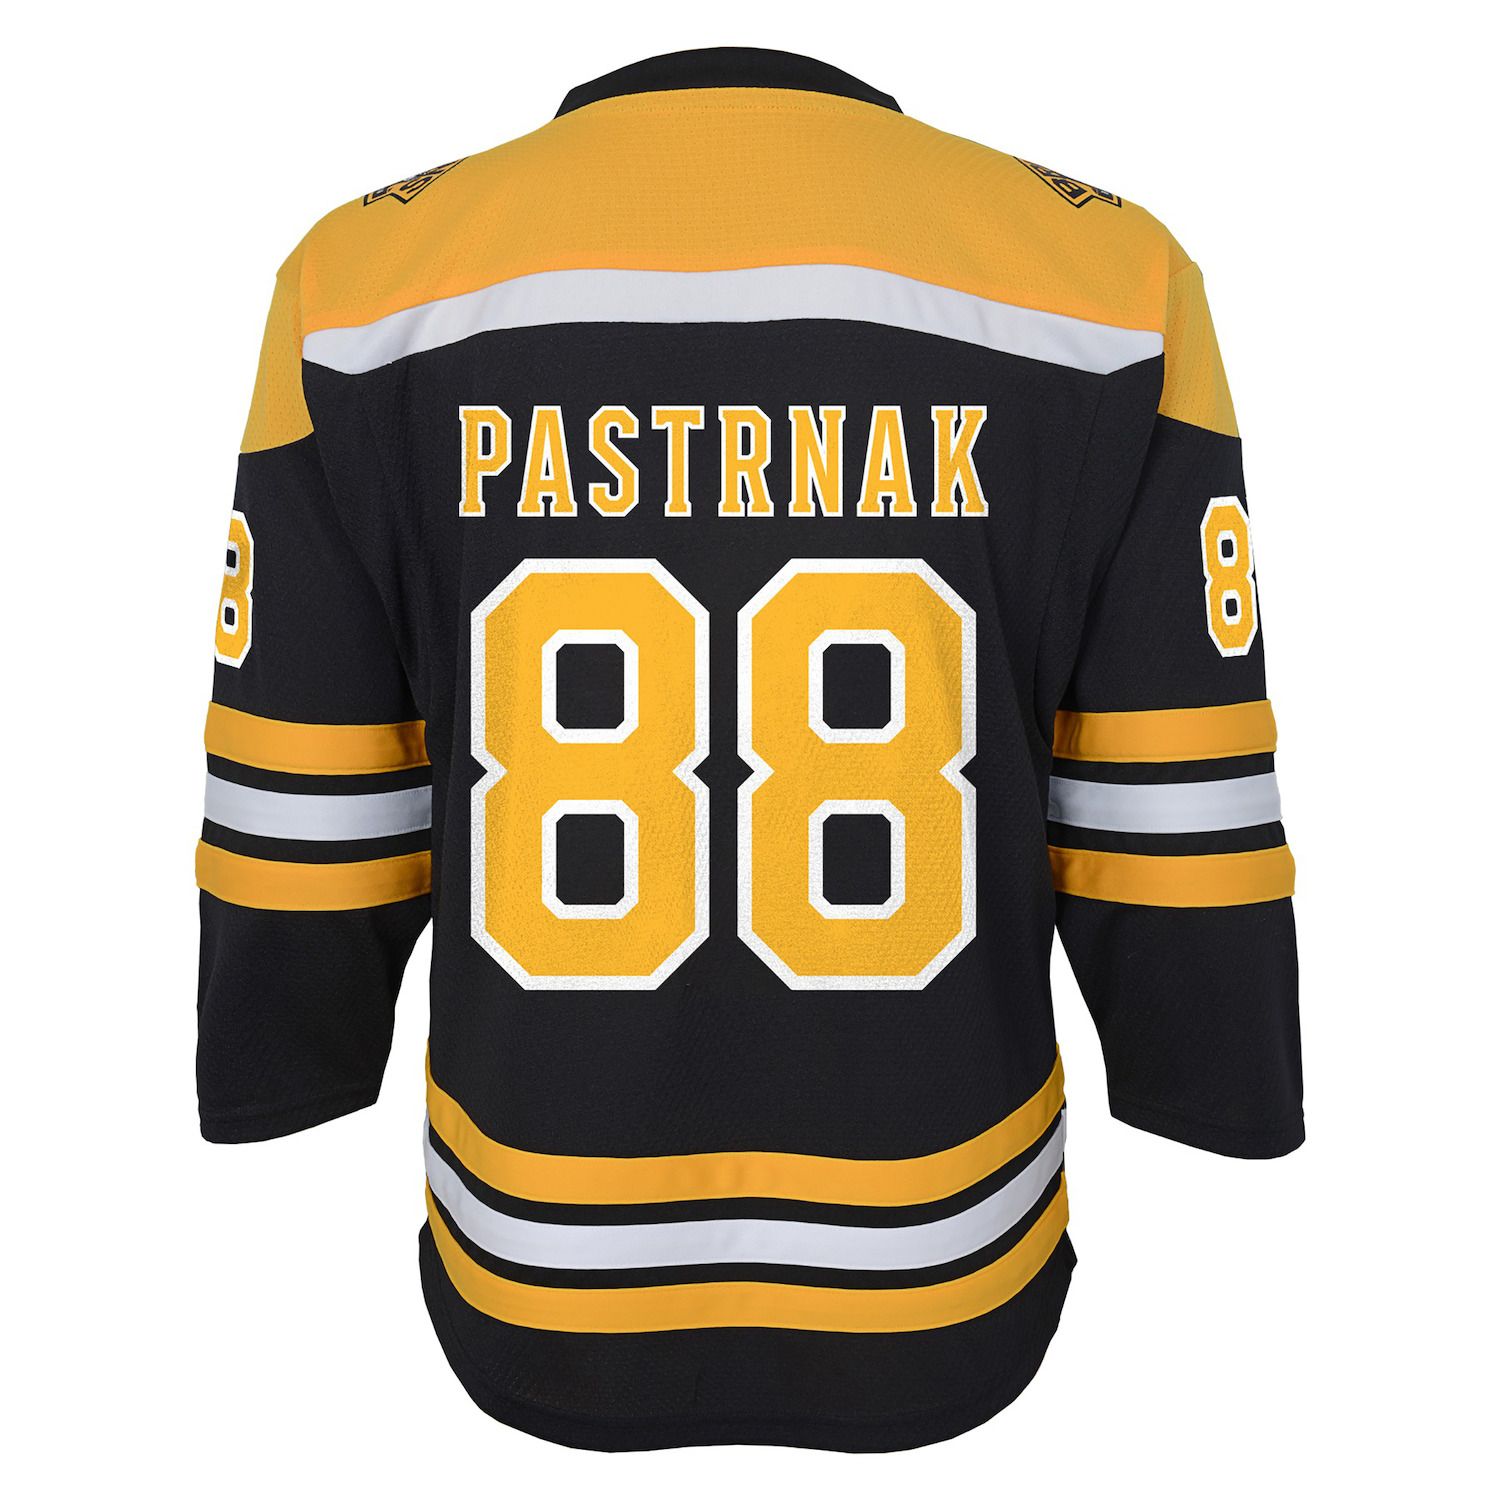 Boston Bruins replica jersey